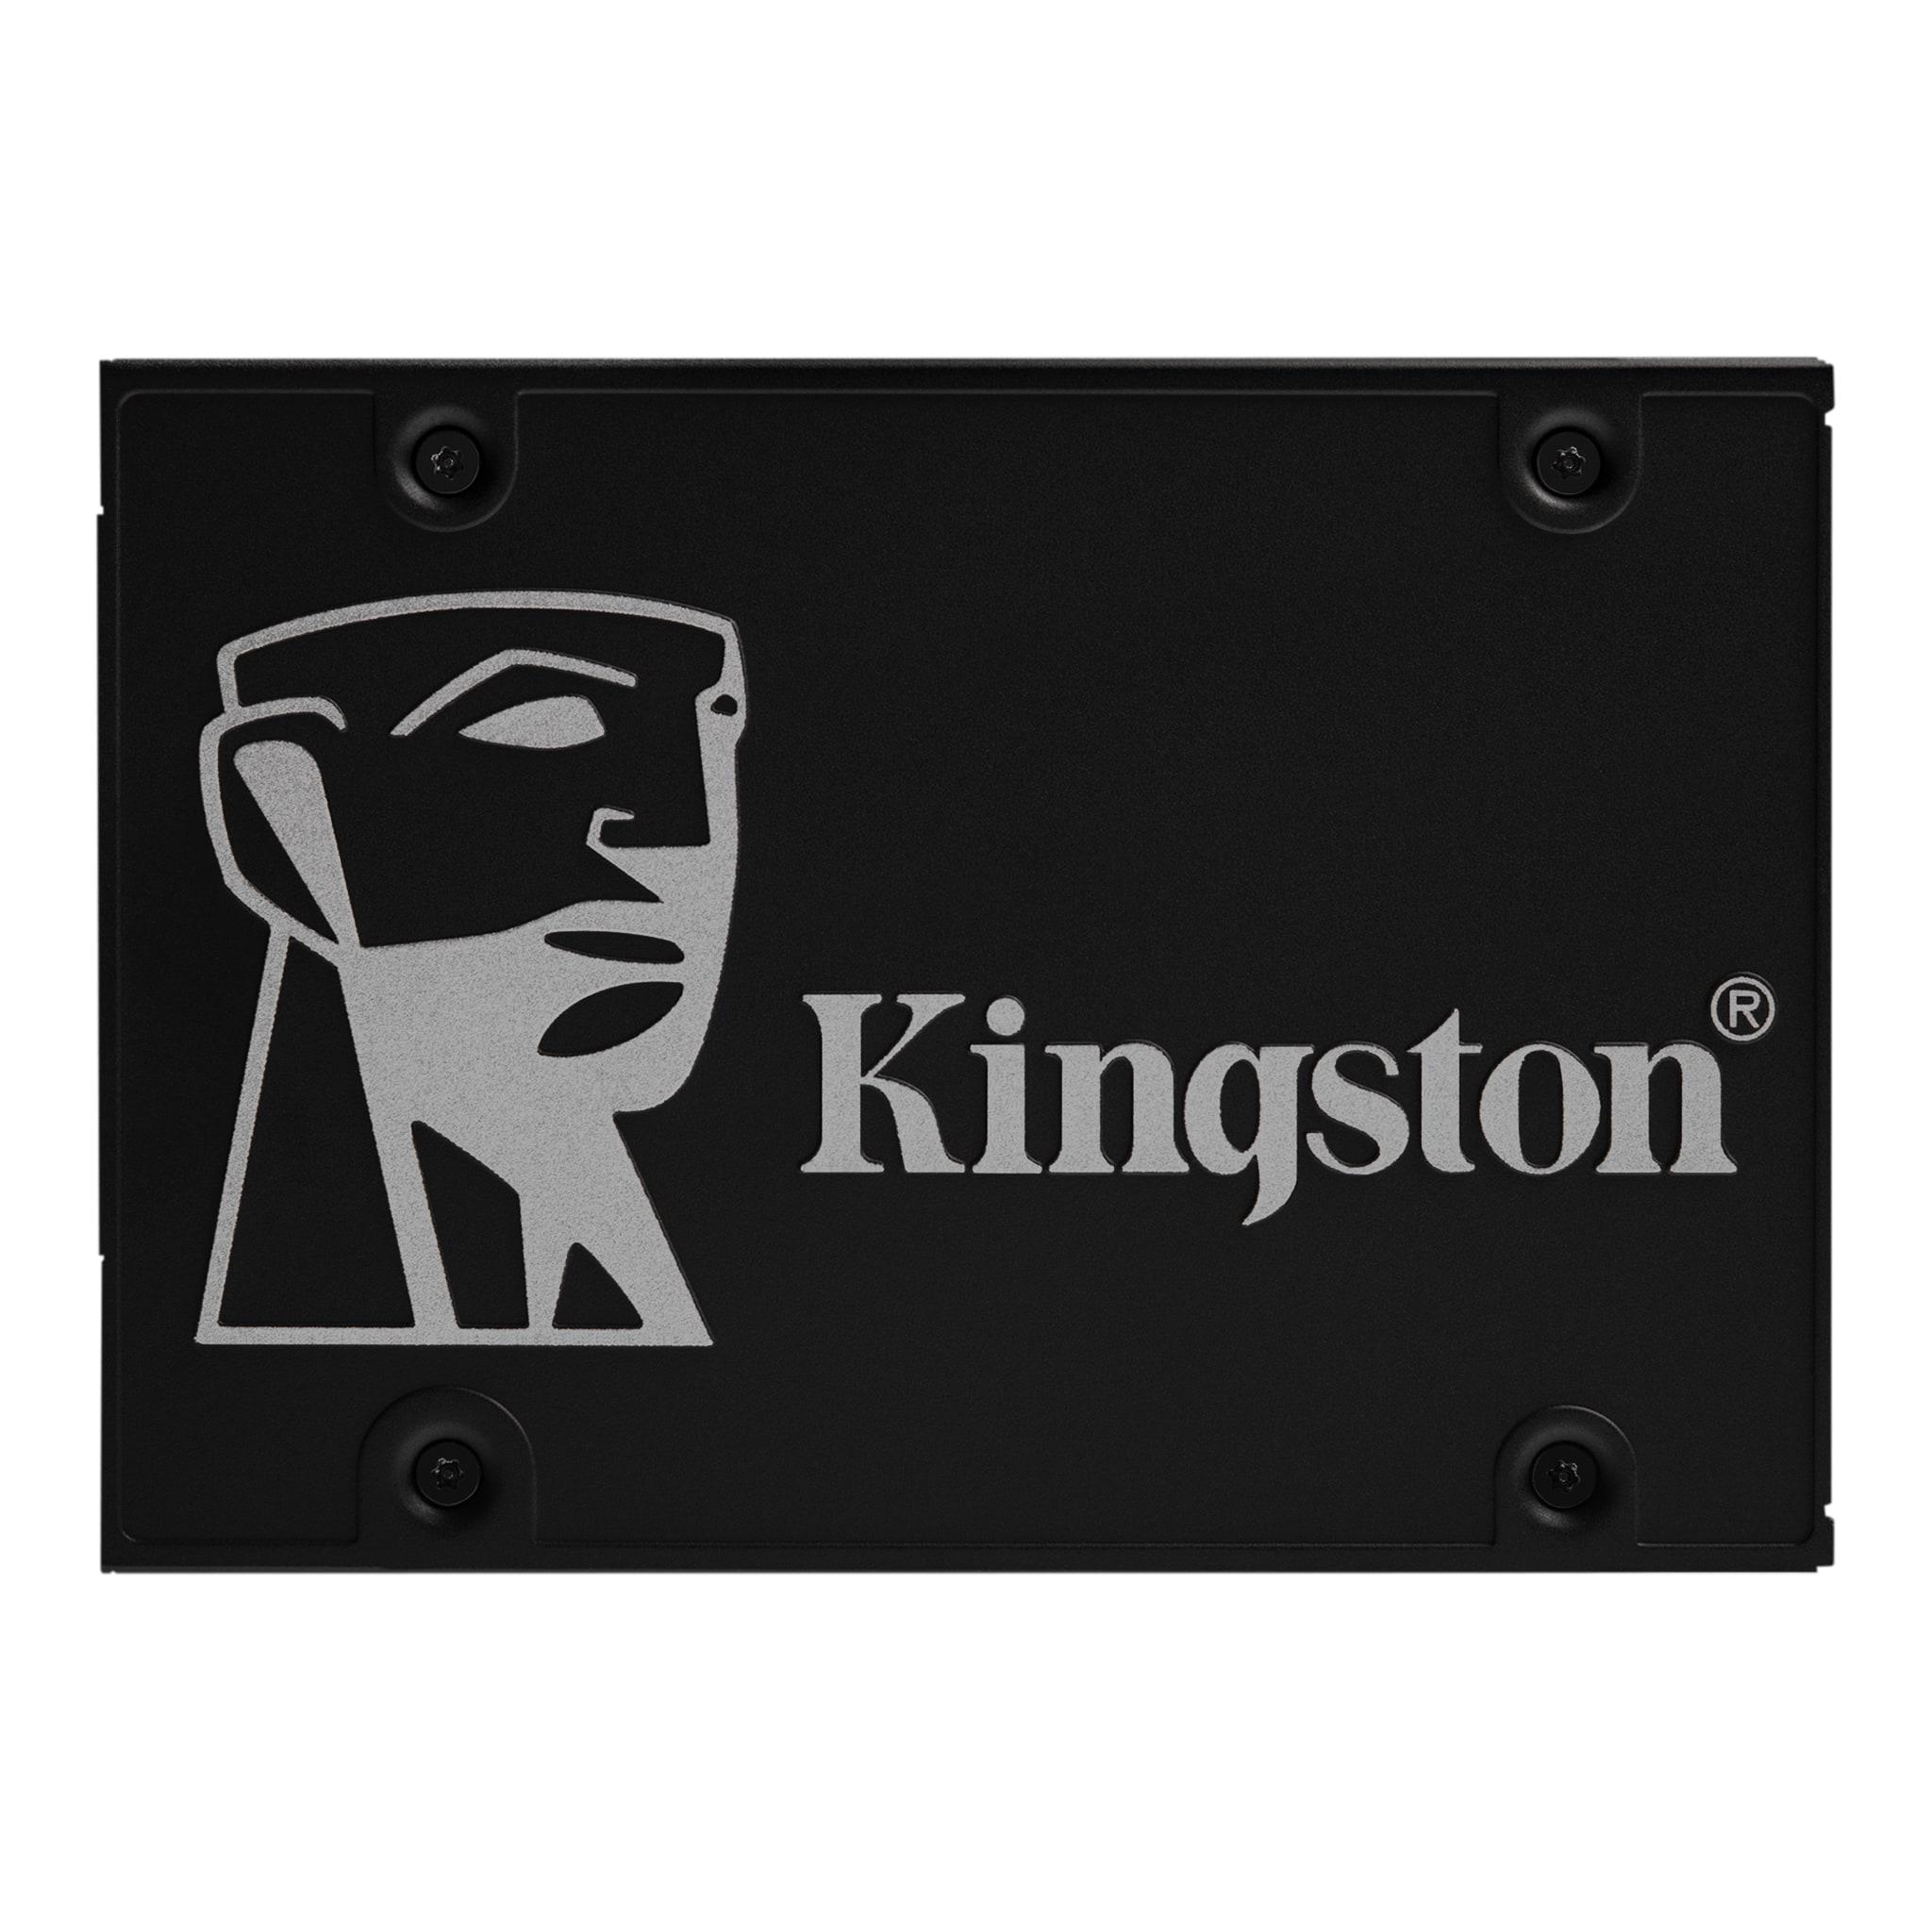 SSD Kingston KC600 256 GB